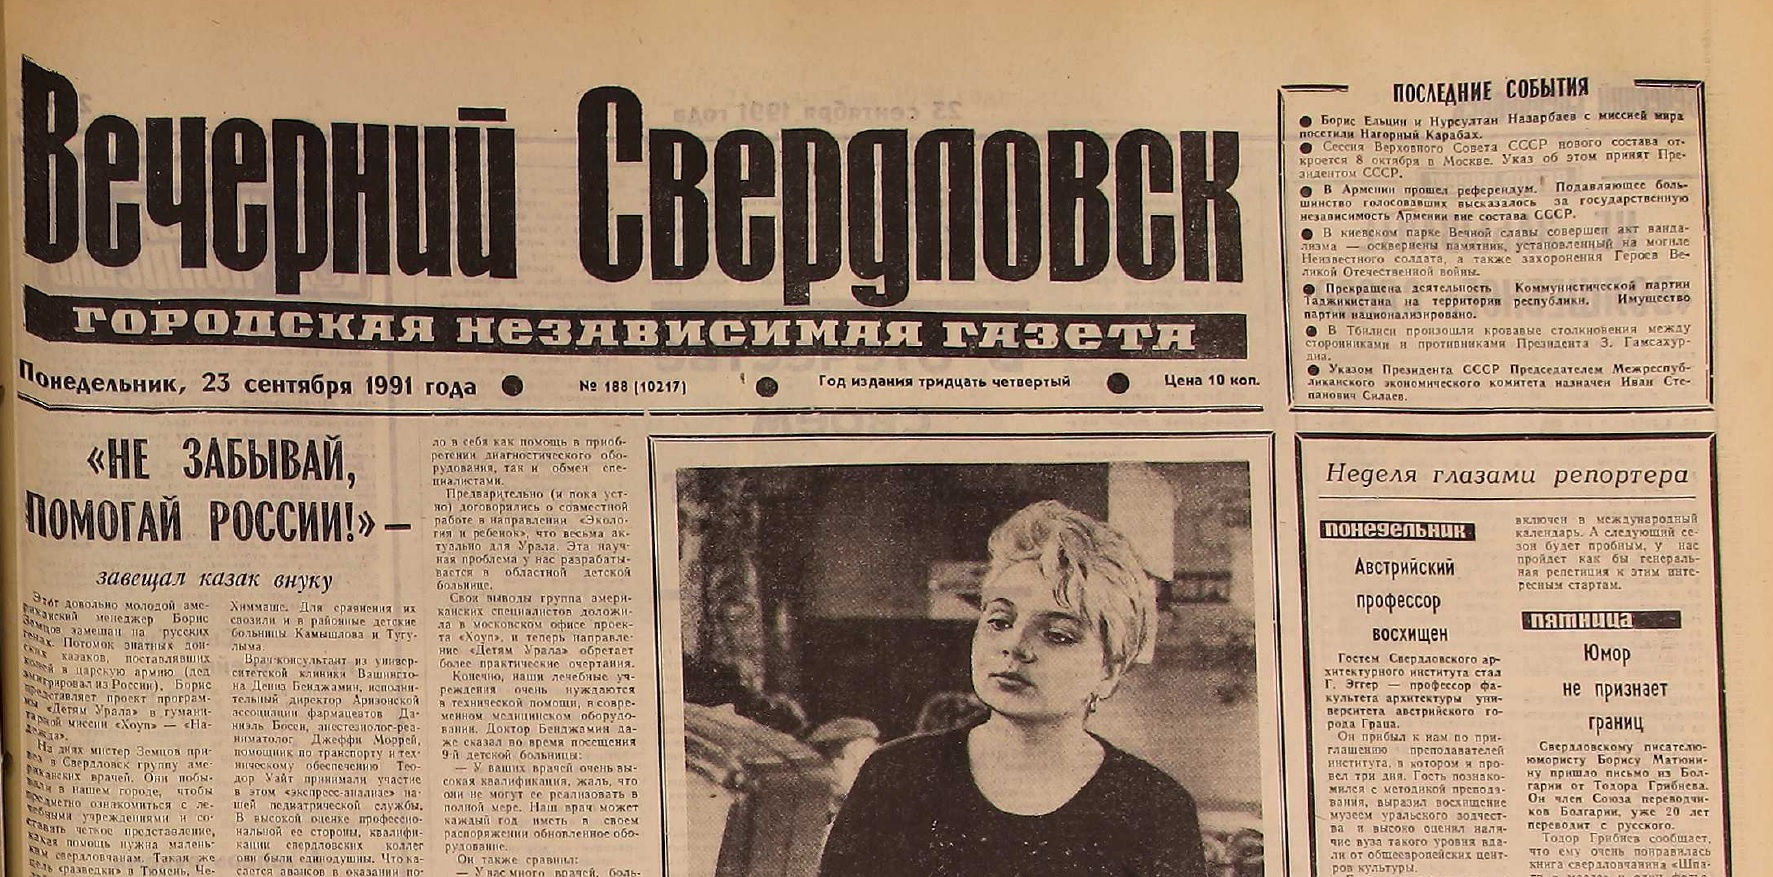 Последний выпуск «Вечернего Свердловска», 23 сентября 1991 года